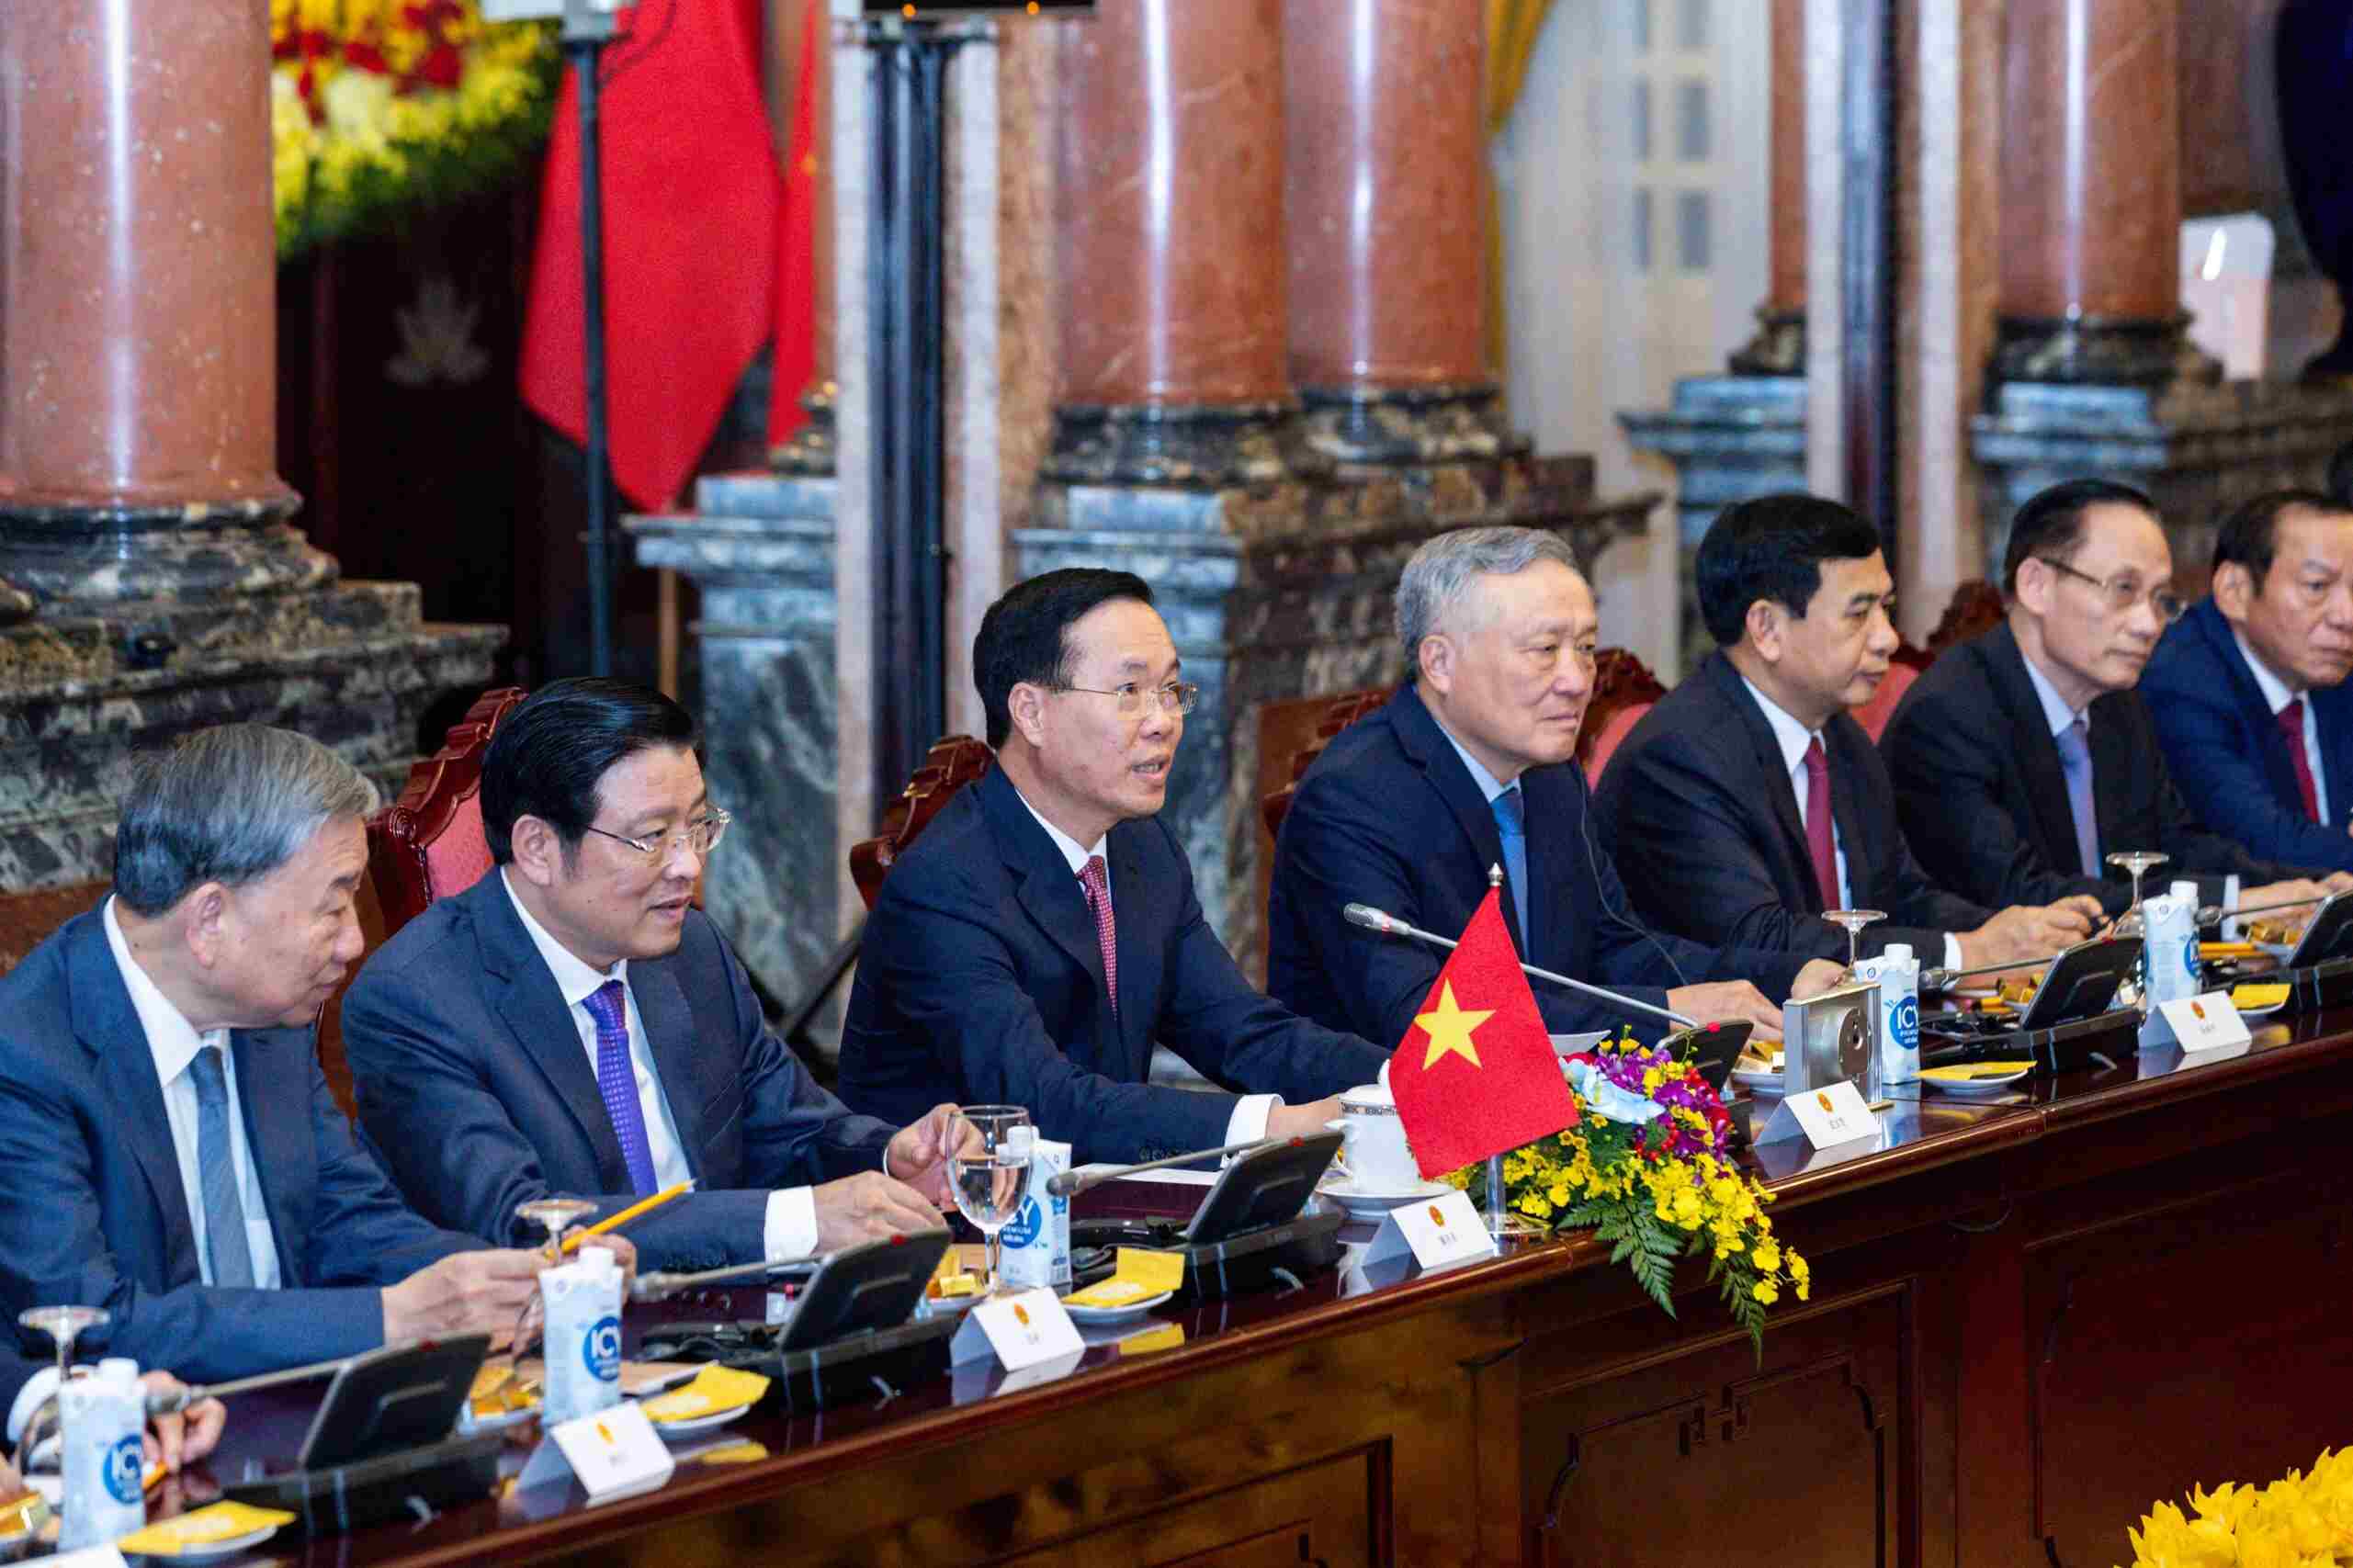 Chủ tịch nước khẳng định, phát triển quan hệ với Trung Quốc luôn là lựa chọn chiến lược, ưu tiên hàng đầu trong chính sách đối ngoại của Việt Nam. Ảnh: Hải Nguyễn